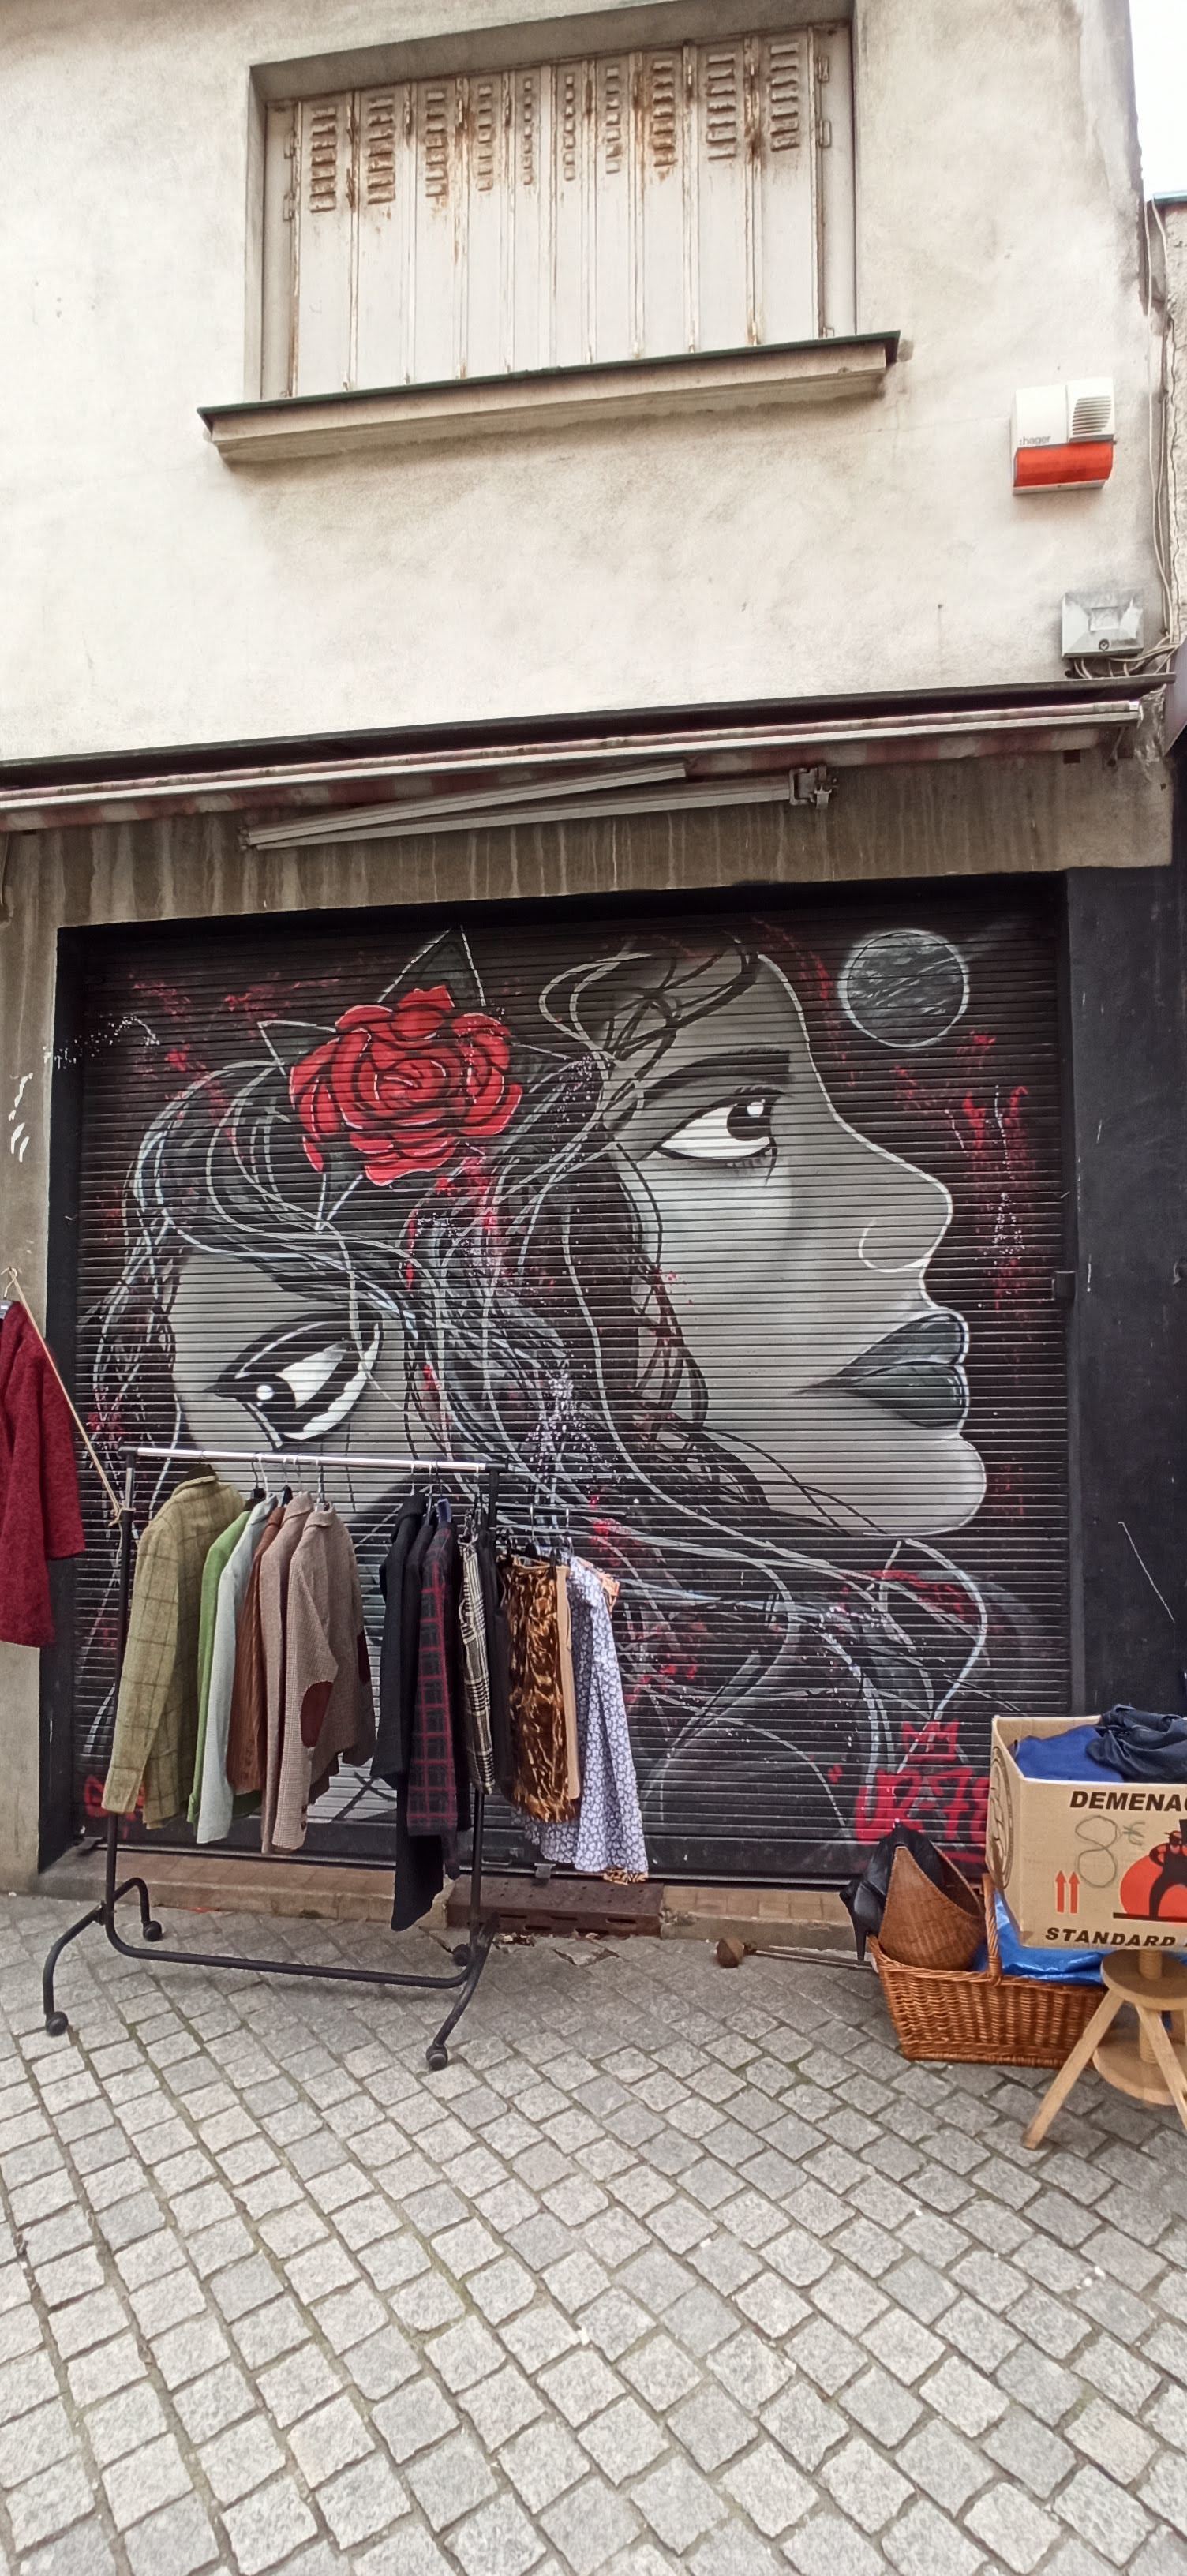 Graffiti 5019 Lady rose capturé par Rabot à Saint-Ouen France